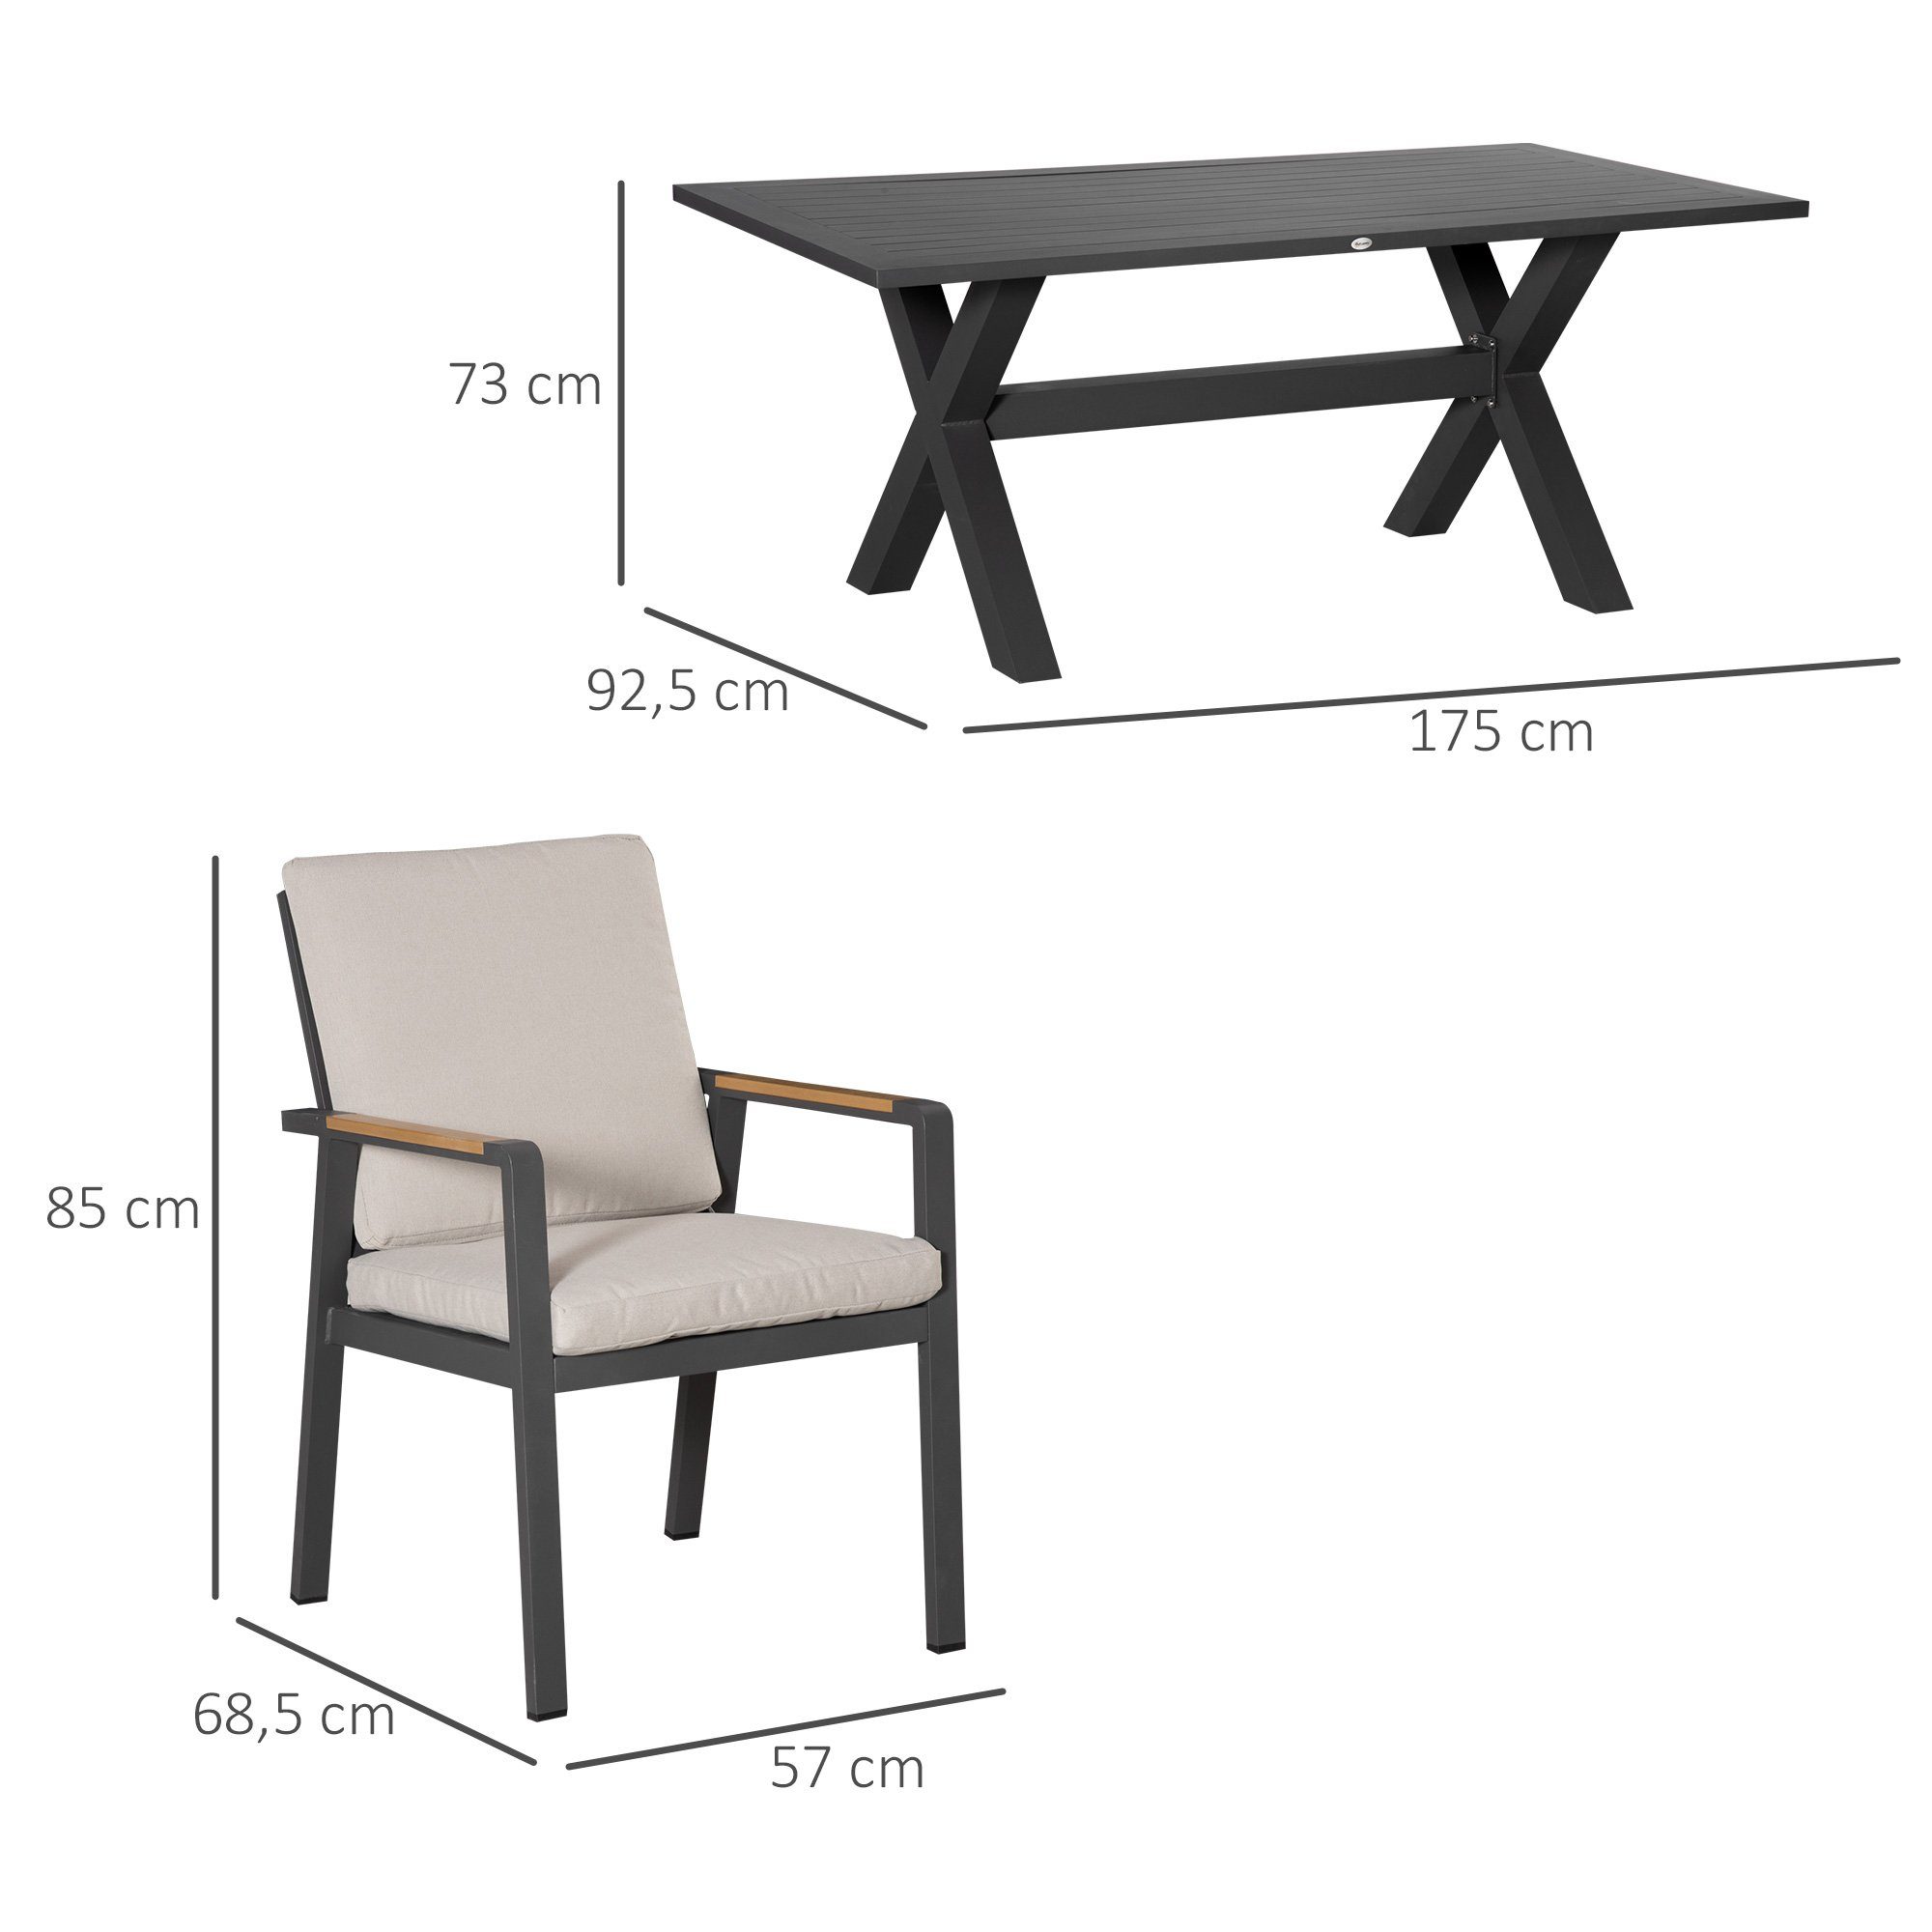 1 7-teilig, 175x92,5x73cm Stühle, Sitzgruppe Outsunny Tisch, 6 wasserabweisende Polster,